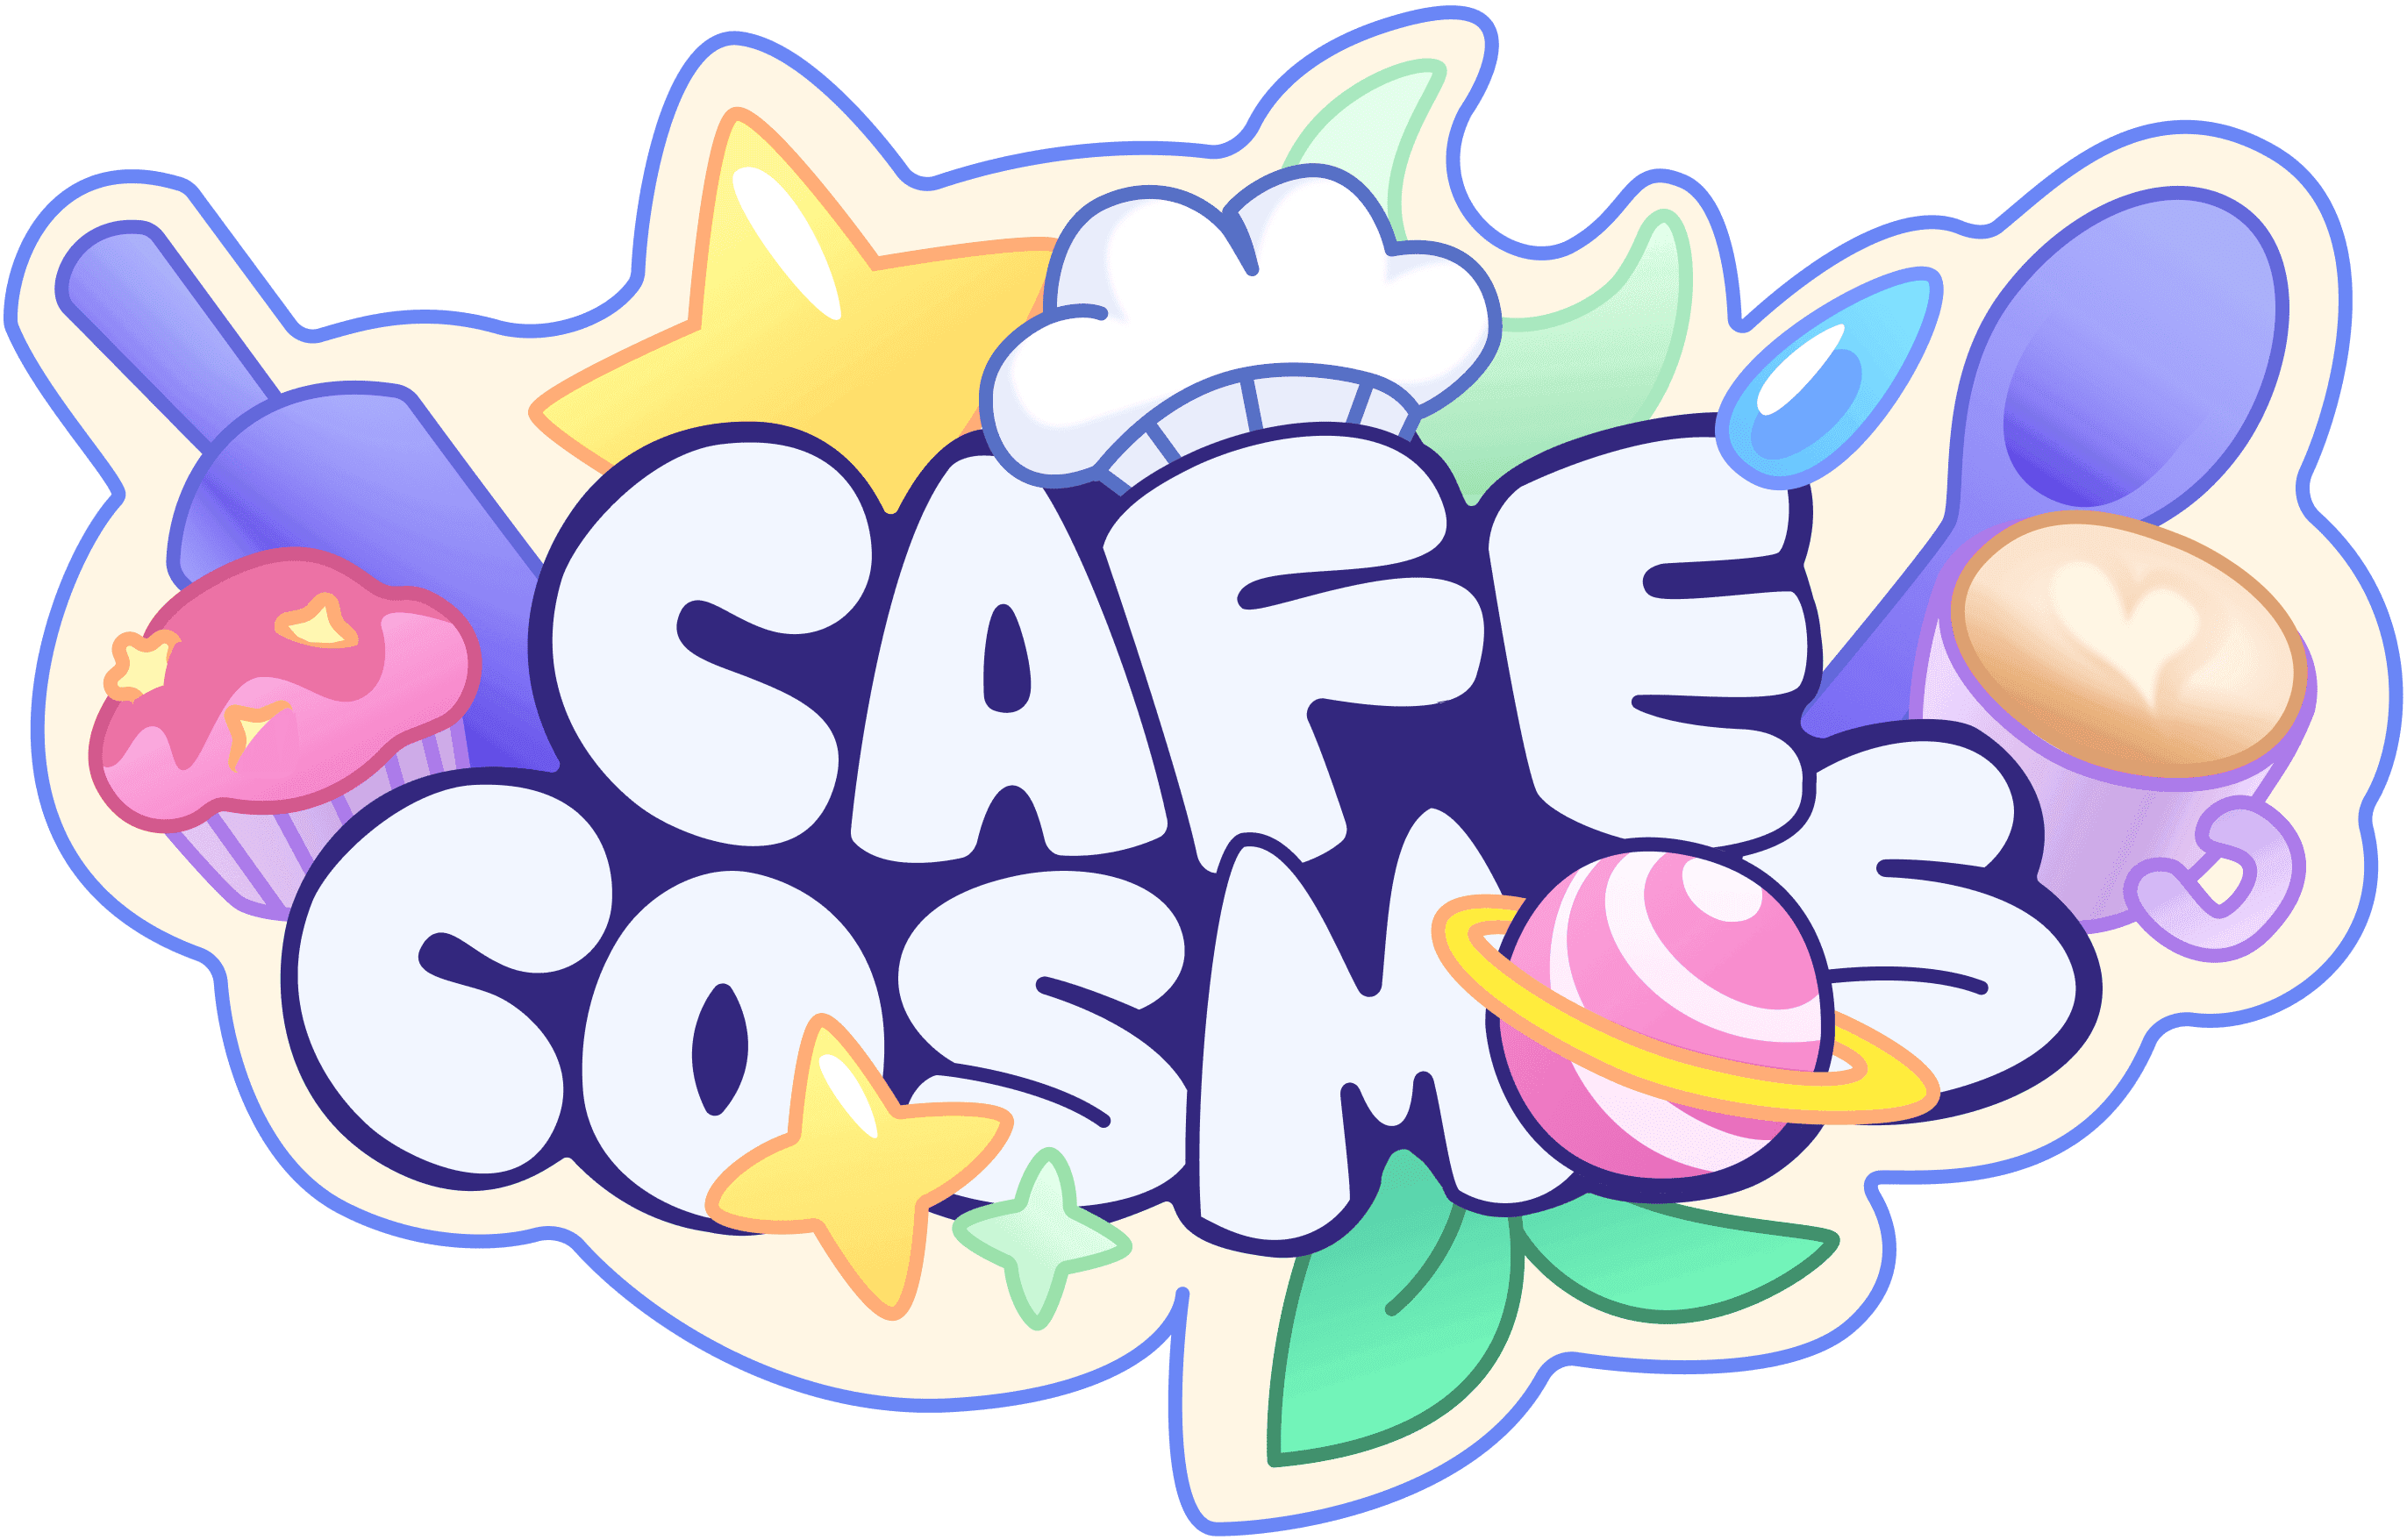 CafeCosmos